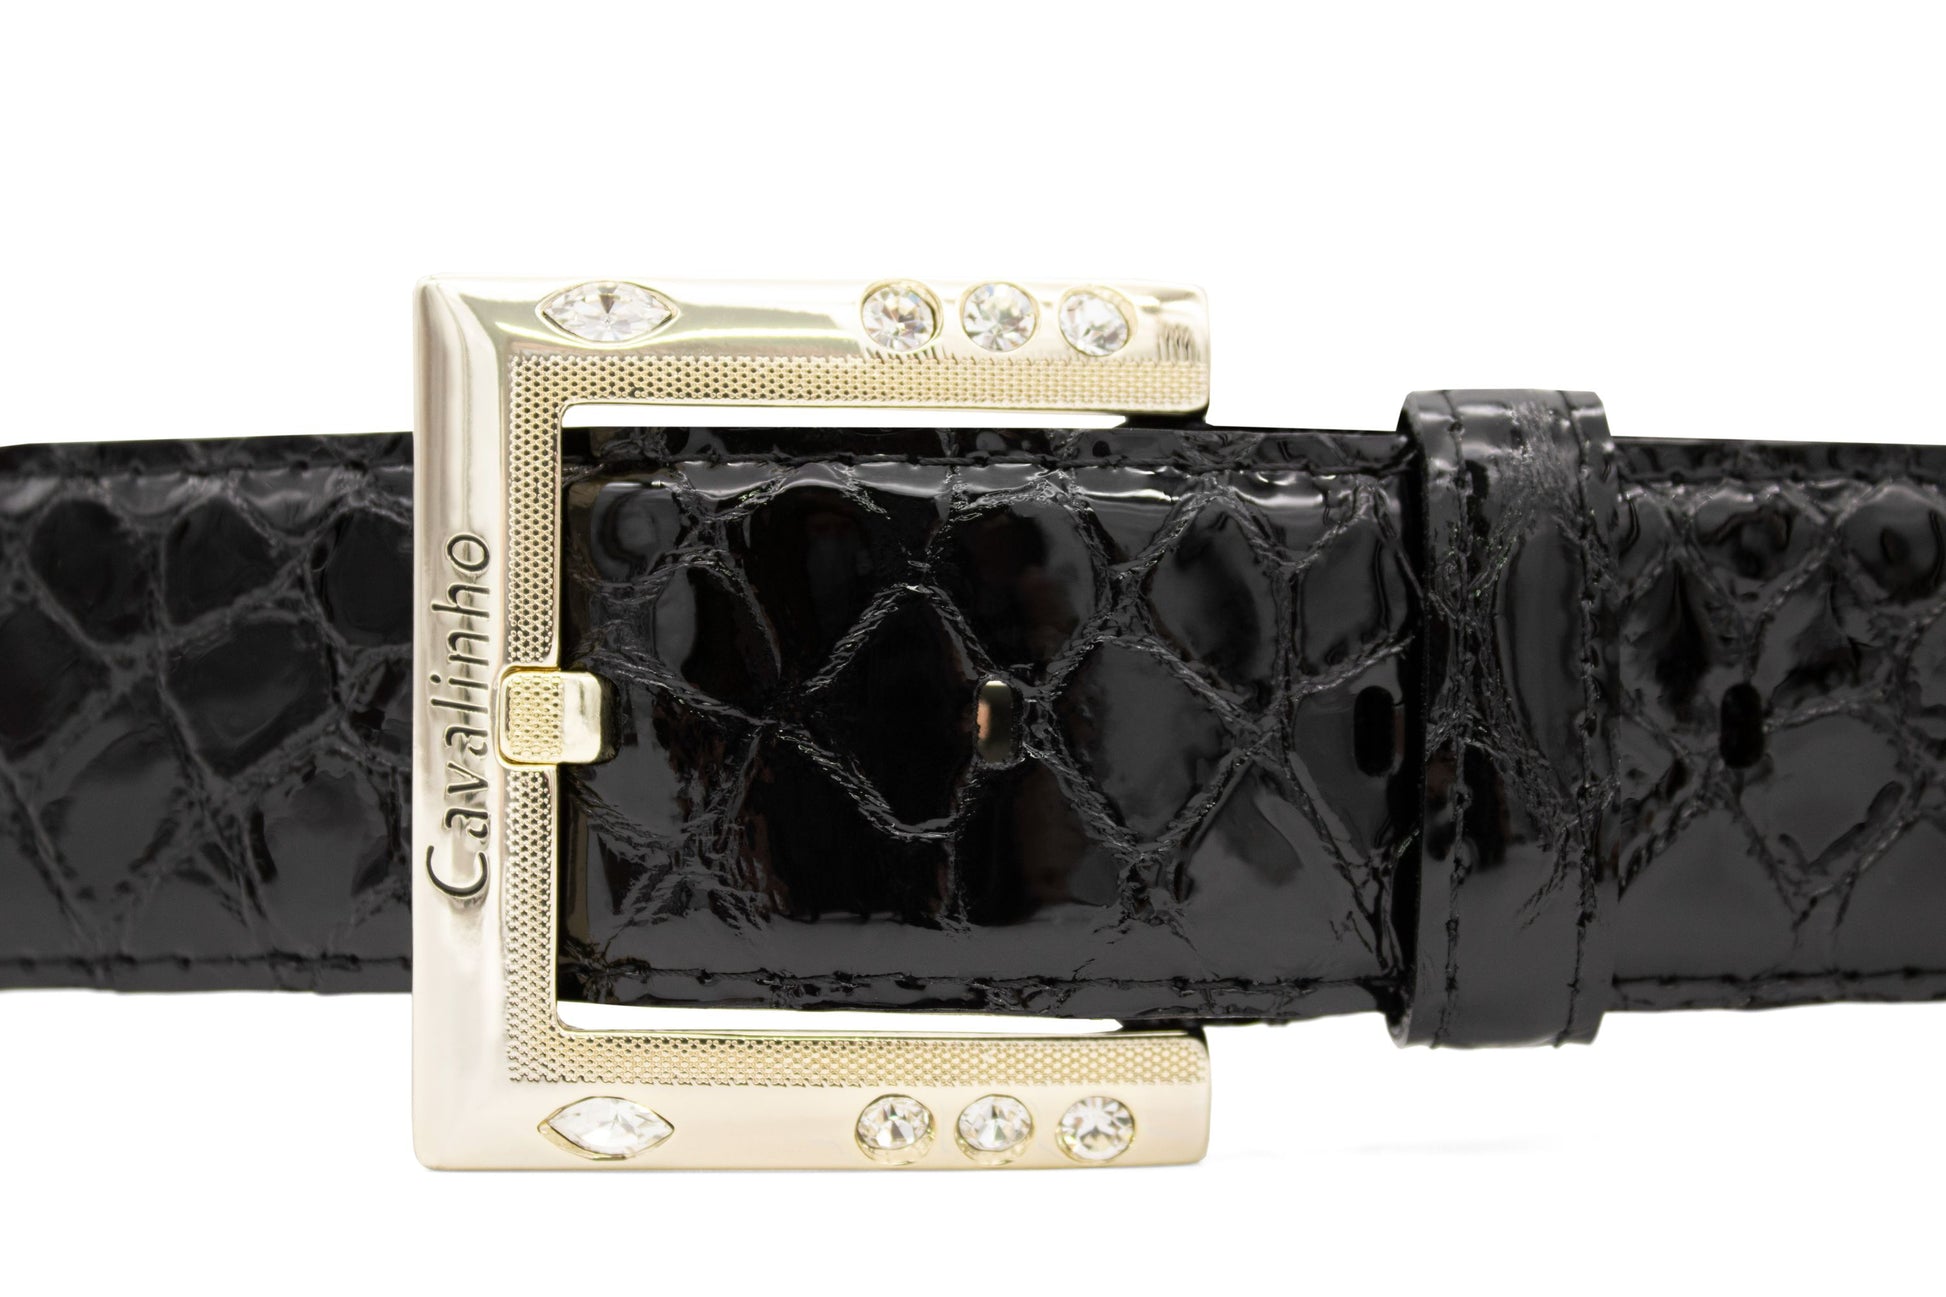 #color_ Black Gold | Cavalinho Gallop Patent Leather Belt - Black Gold - 58010810.01_2